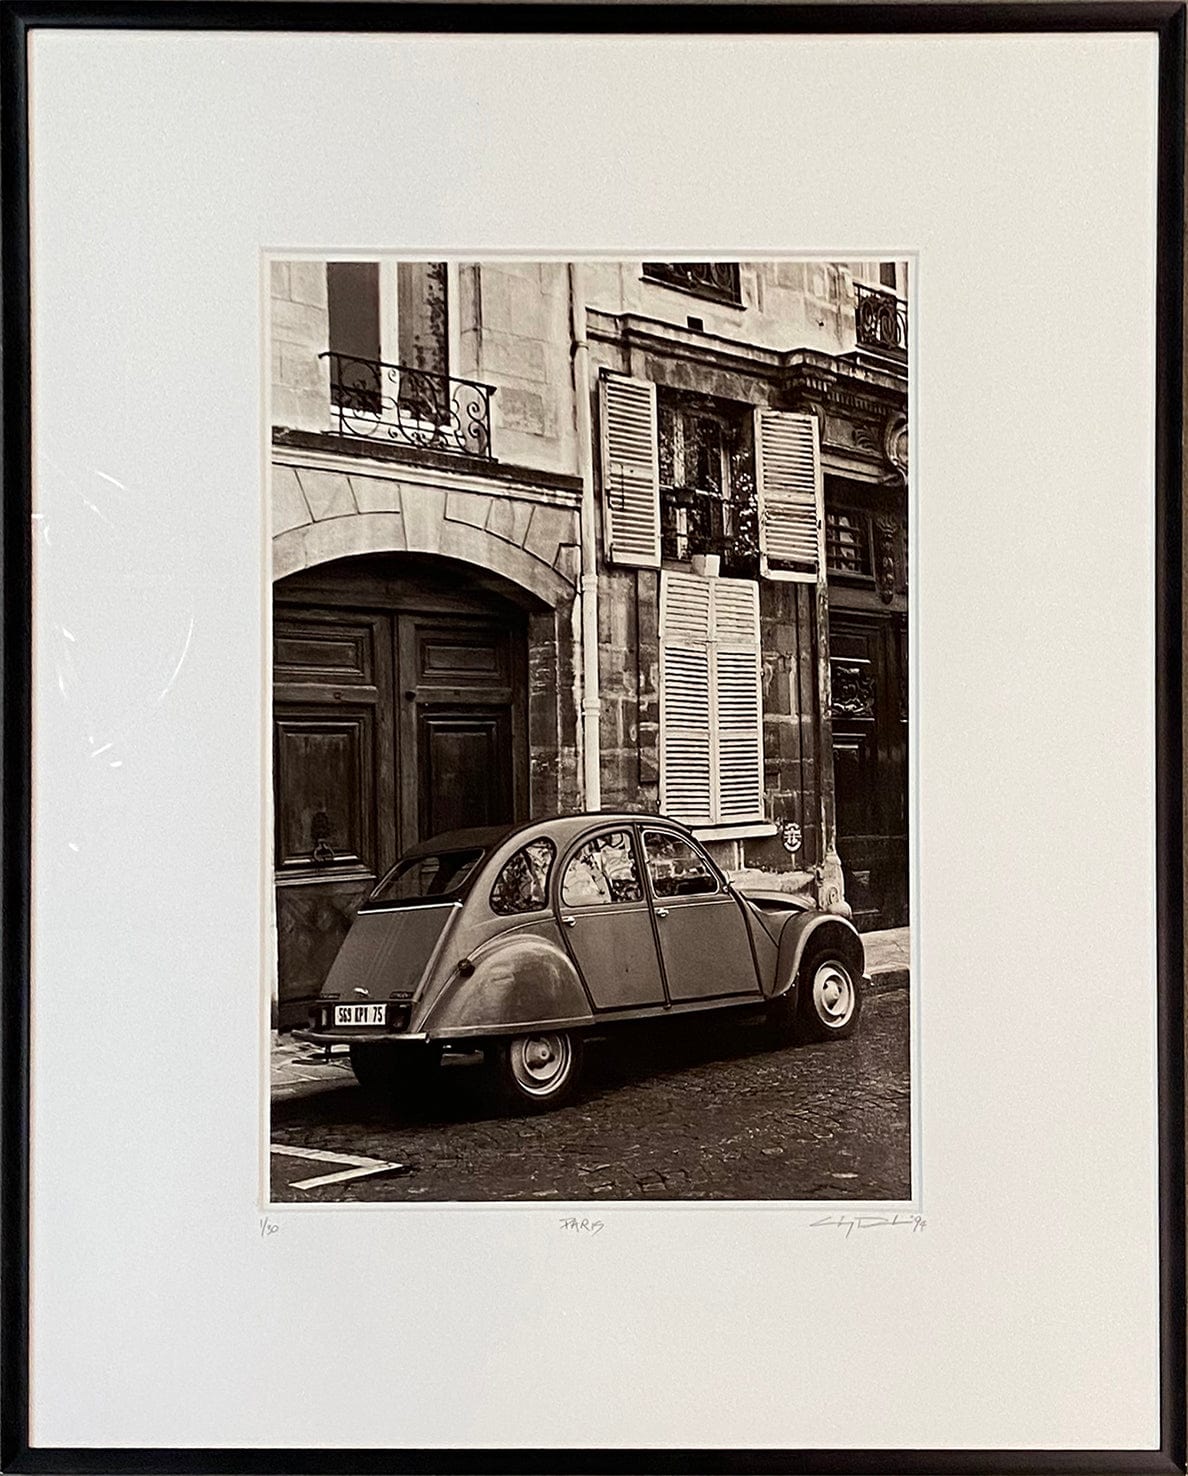 Clay Davidson photo Paris Voiture, framed Art Works Gallery